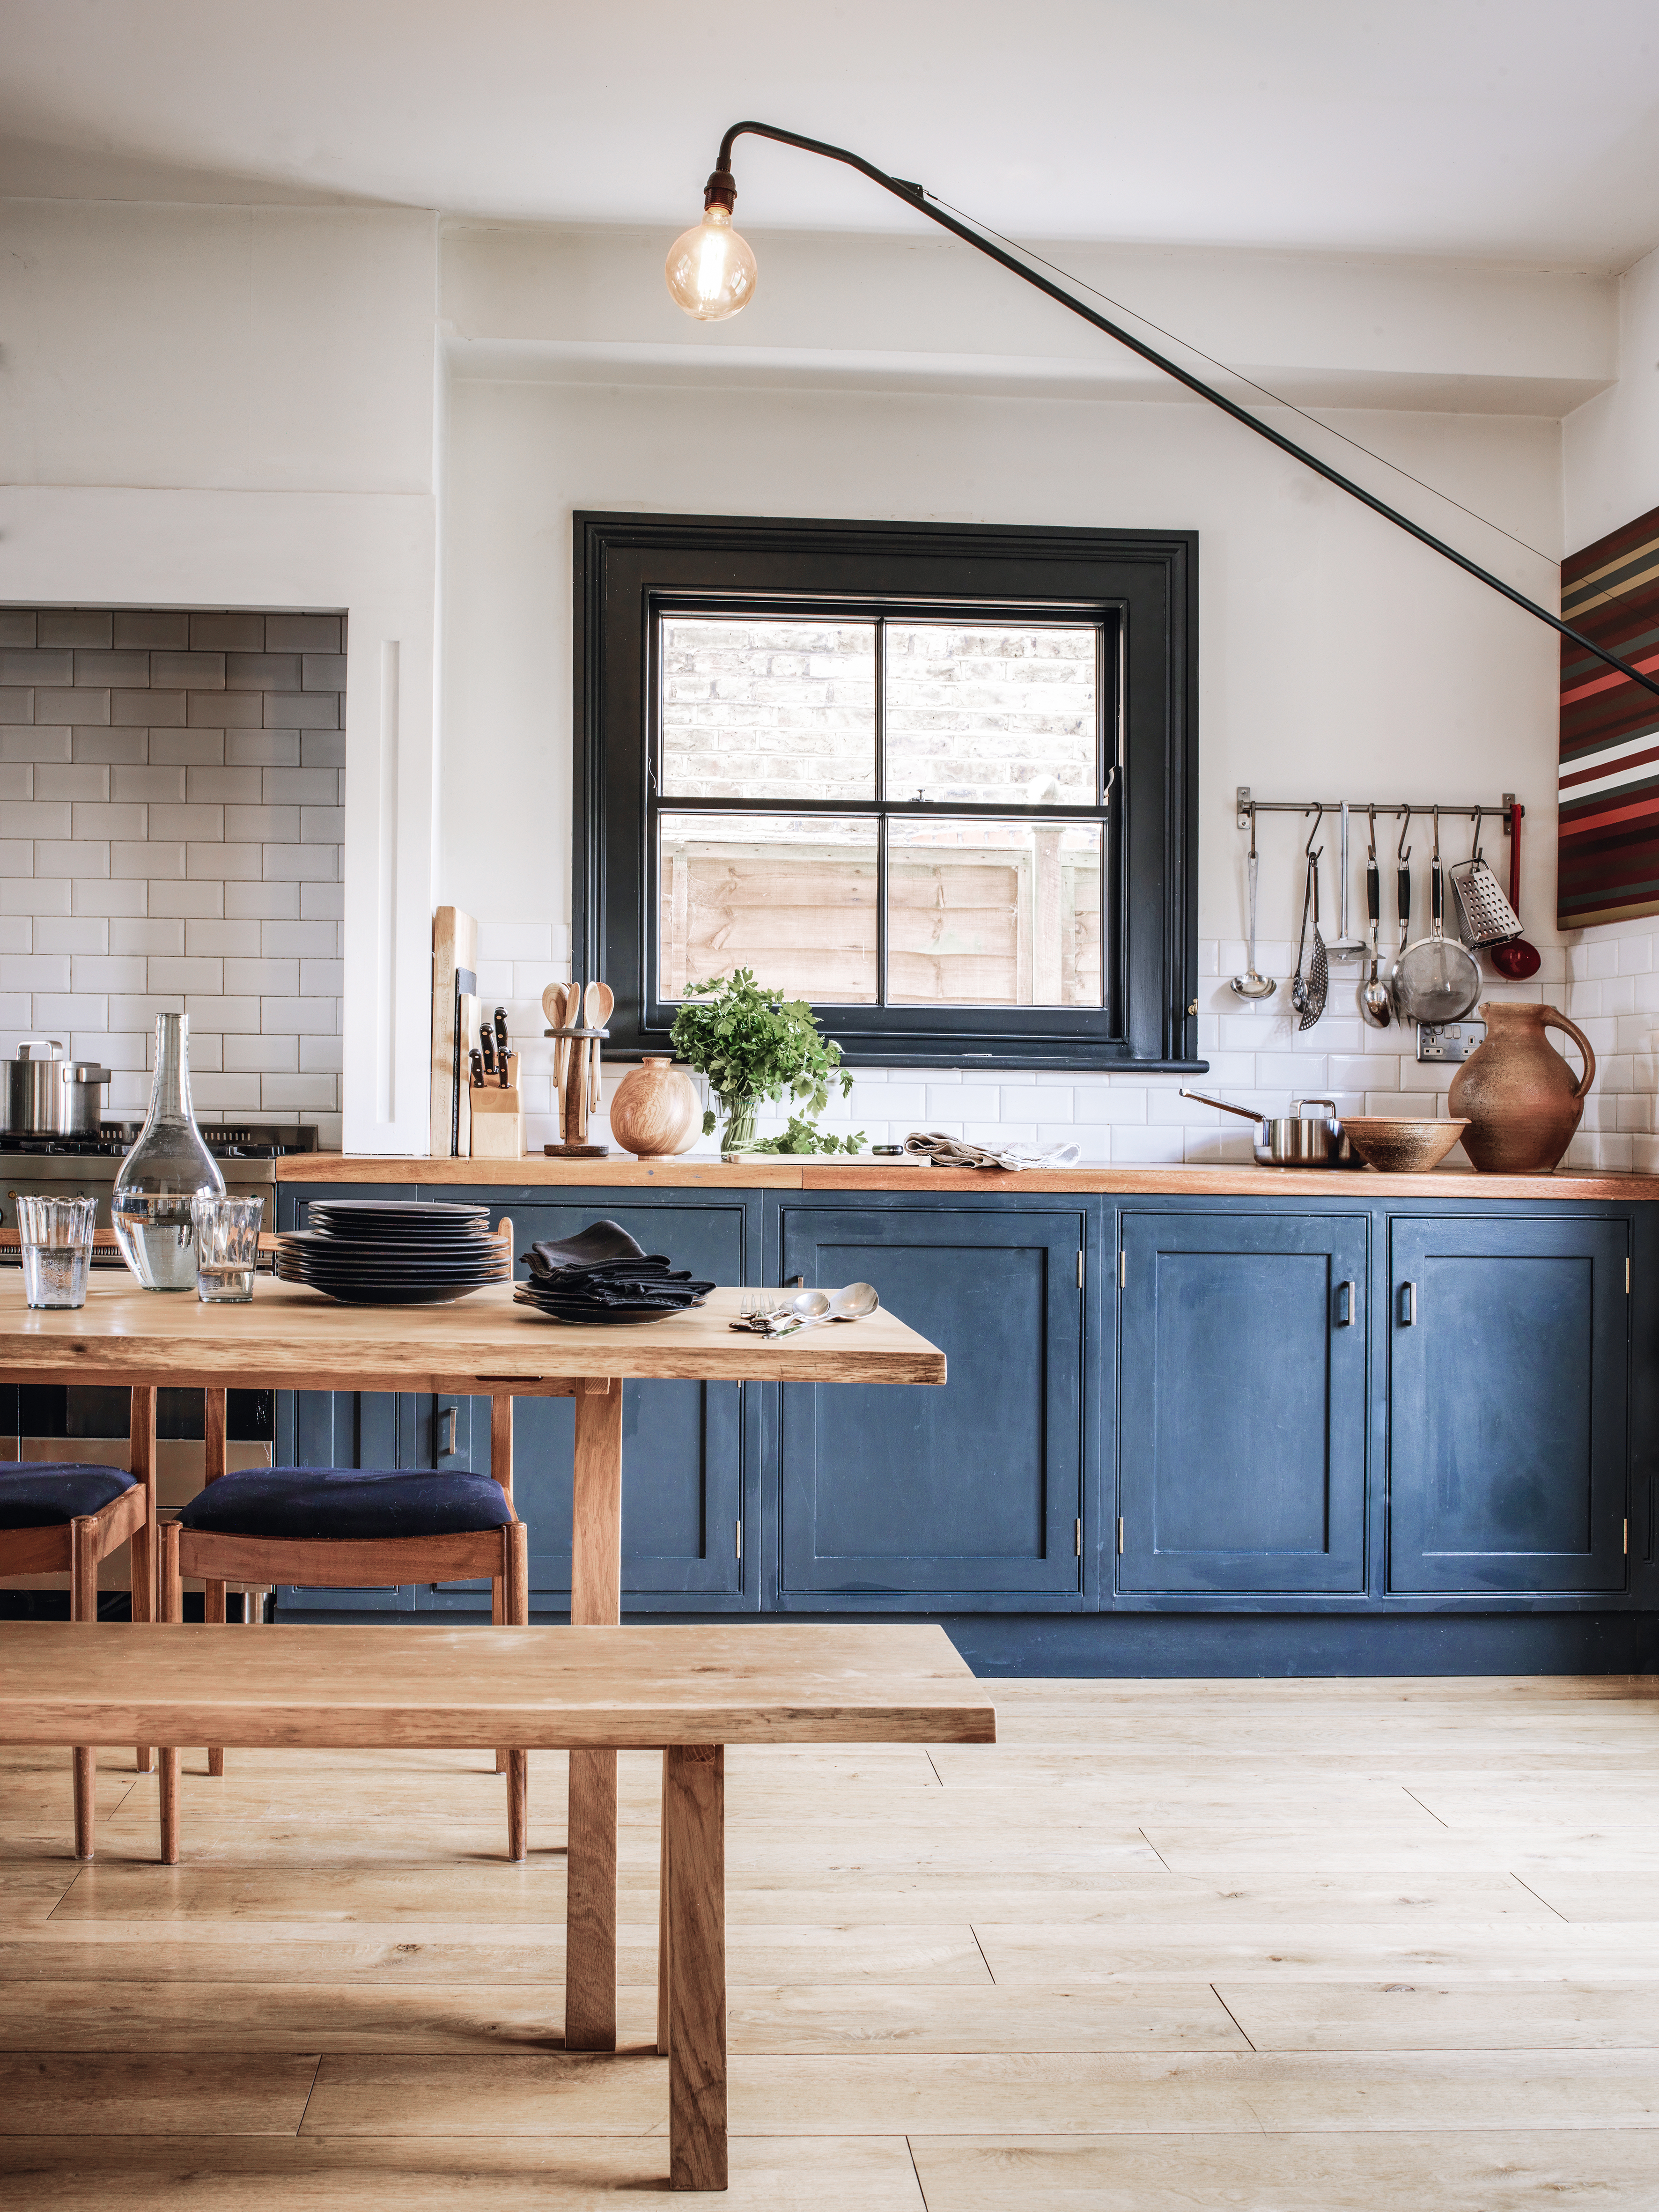 Dark blue kitchen with wooden floors